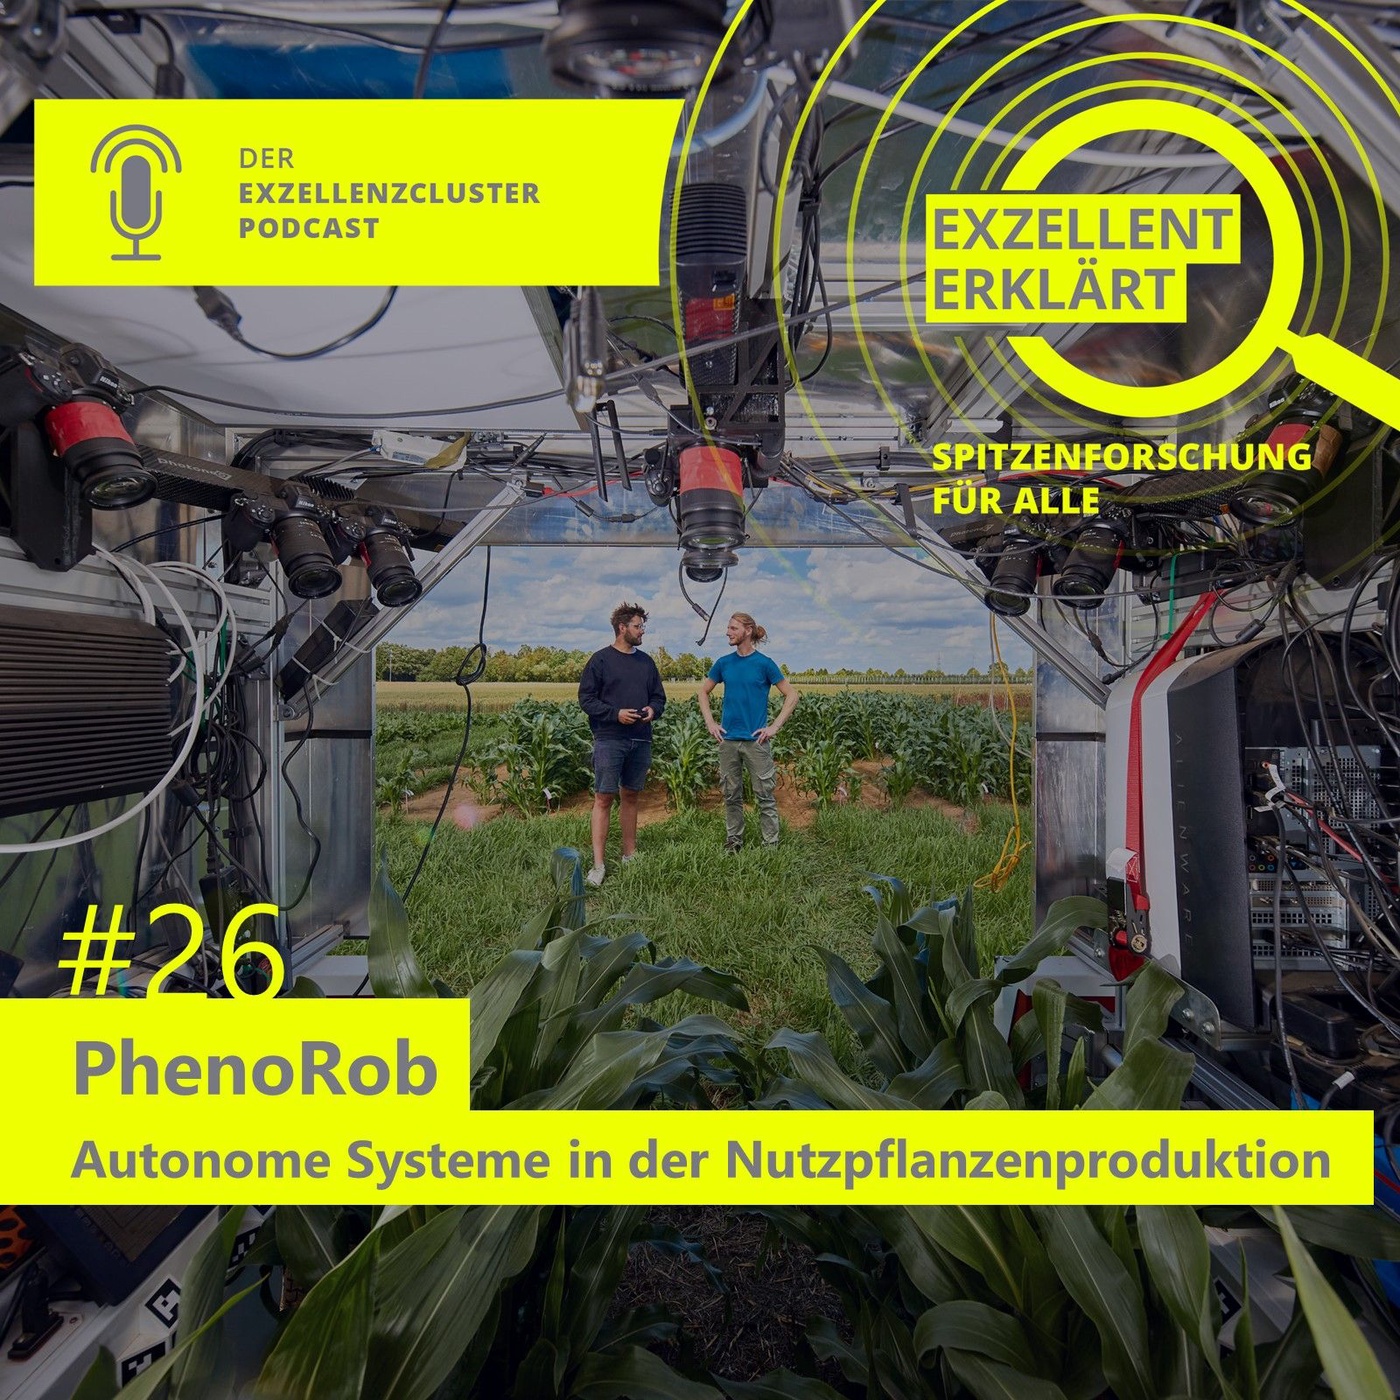 PhenoRob - Autonome Systeme in der Nutzpflanzenproduktion